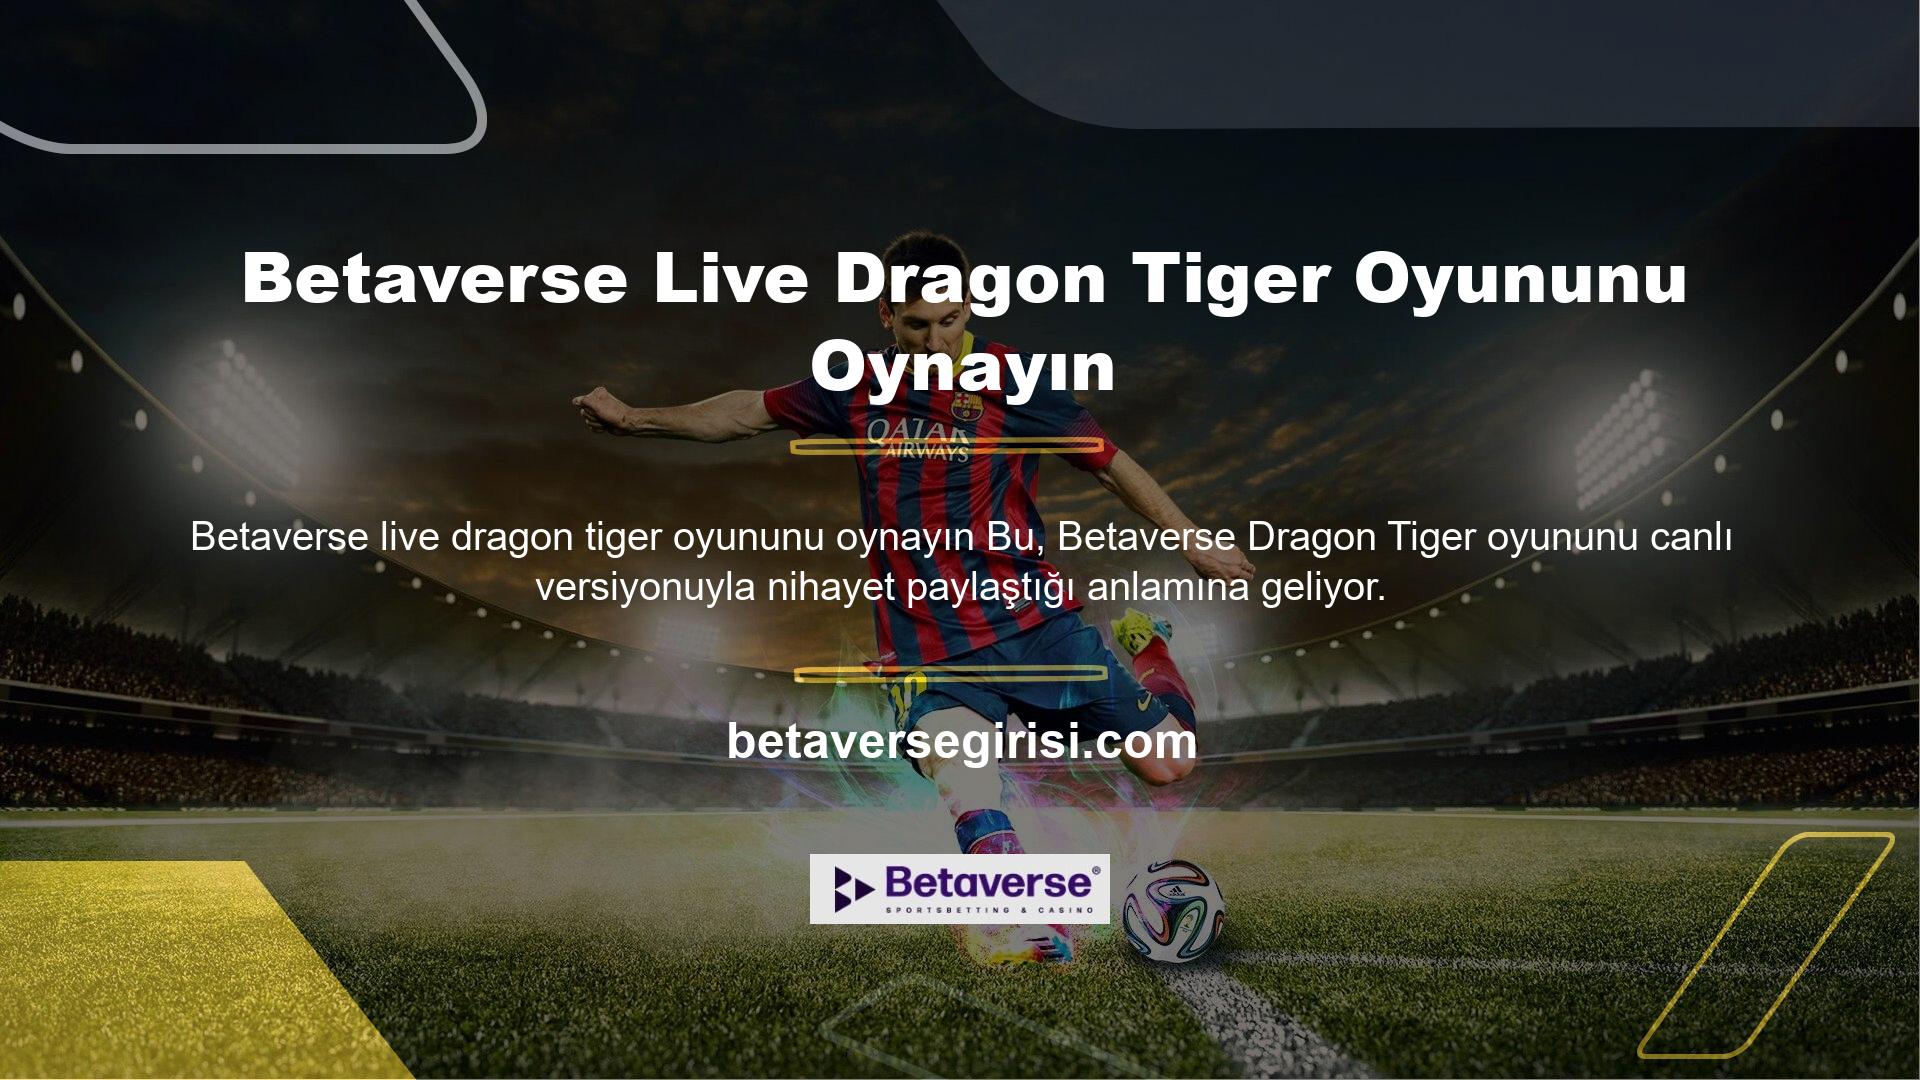 Betaverse live dragon tiger oyununu oynayın